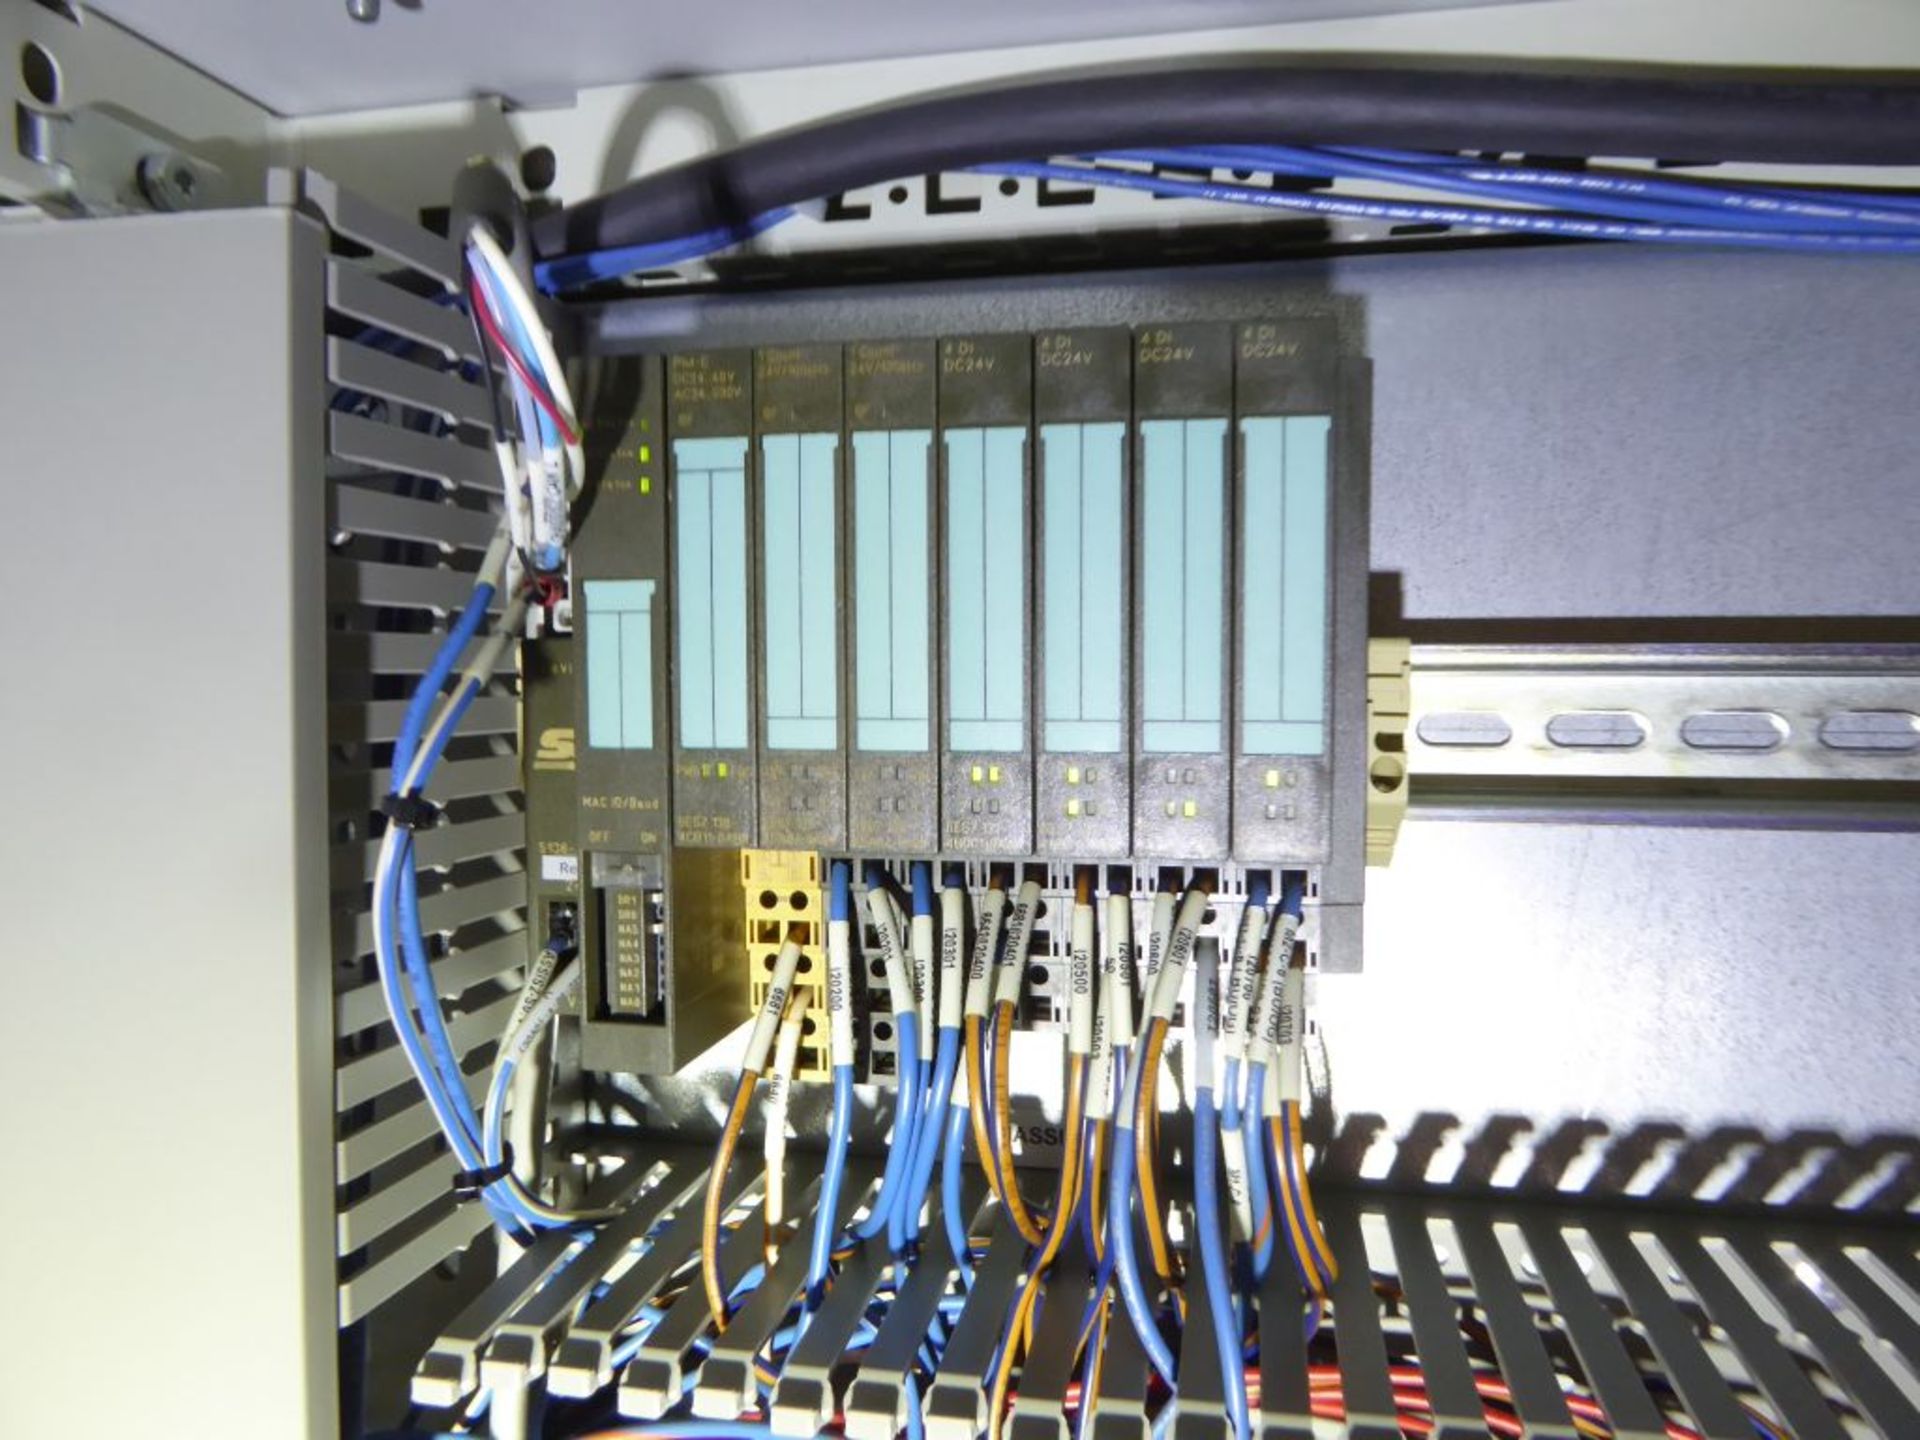 Control Panel with (2) Allen Bradley Powerflex 700 Drives - Bild 3 aus 22